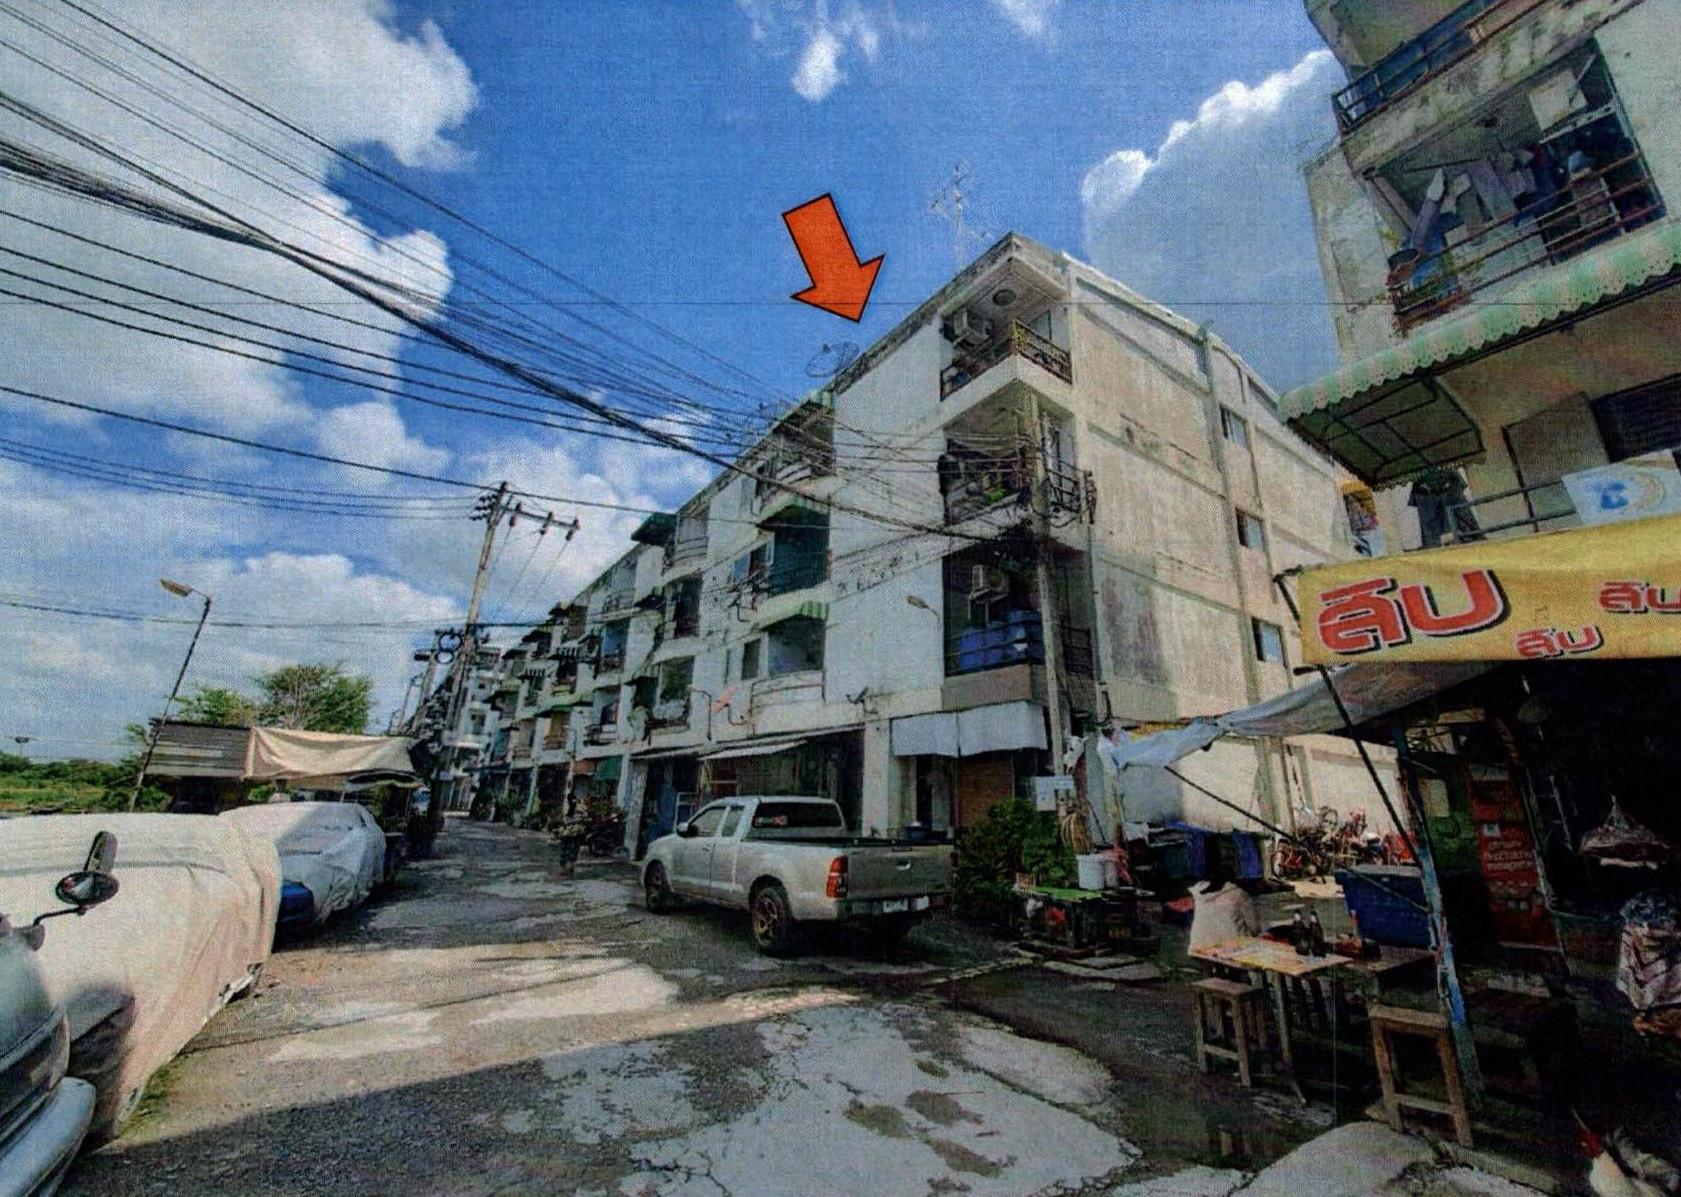 ทรัพย์ธนาคารโดย GHB คอนโด พูลเจริญคอนโดทาวน์ (Phuncharoen Condotown)